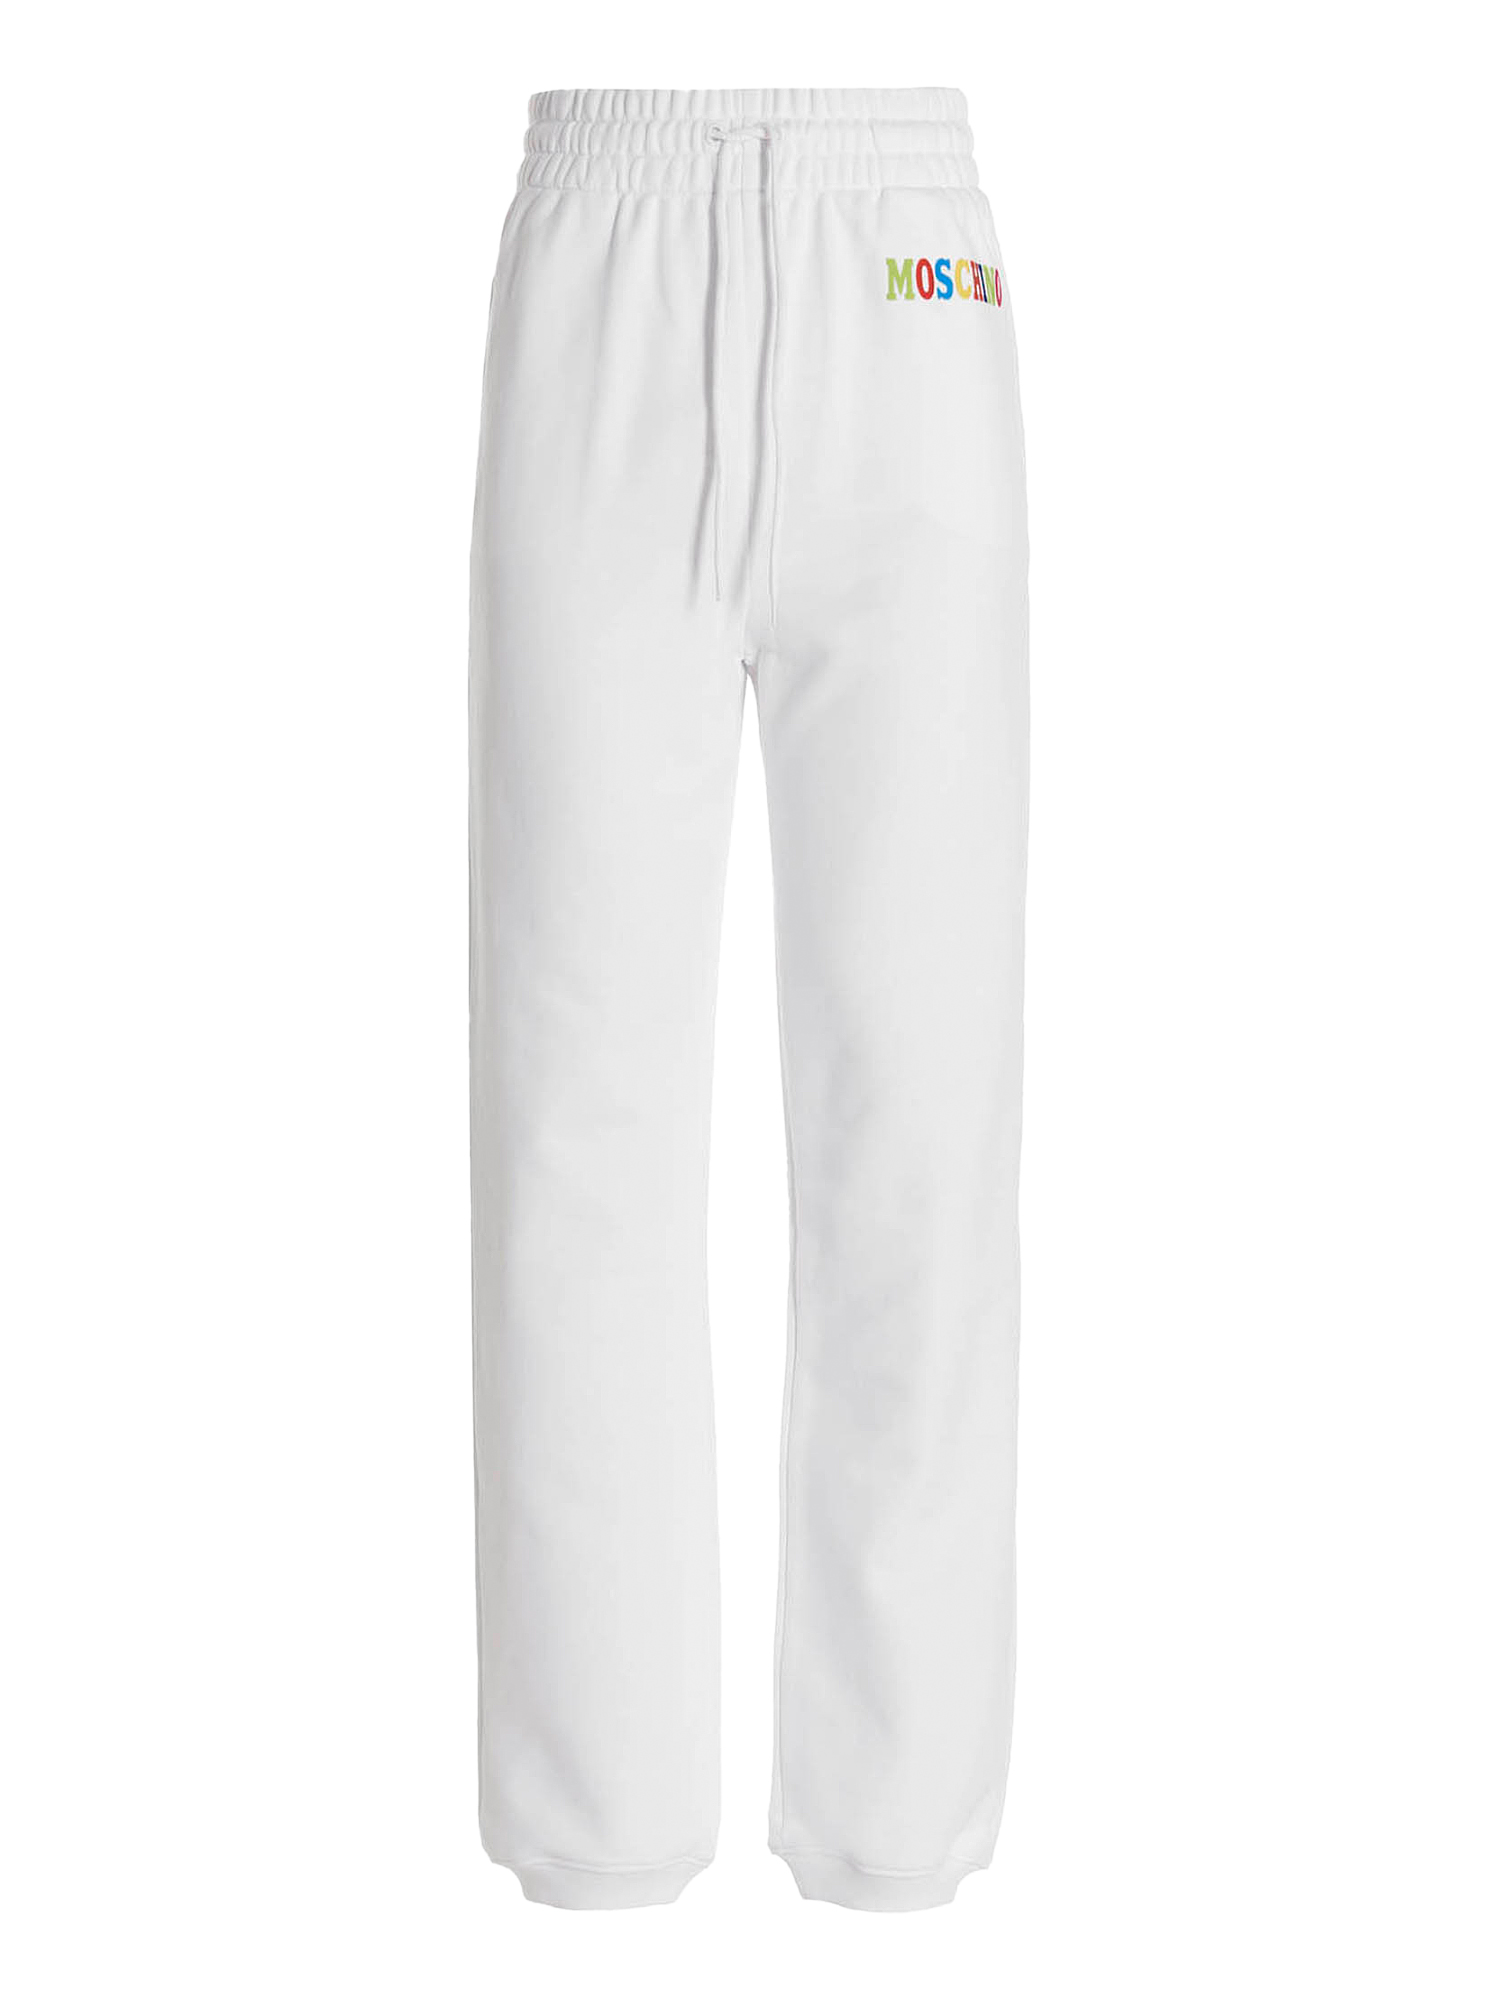 Pantalons Pour Femme - Moschino - En Cotton White - Taille:  -